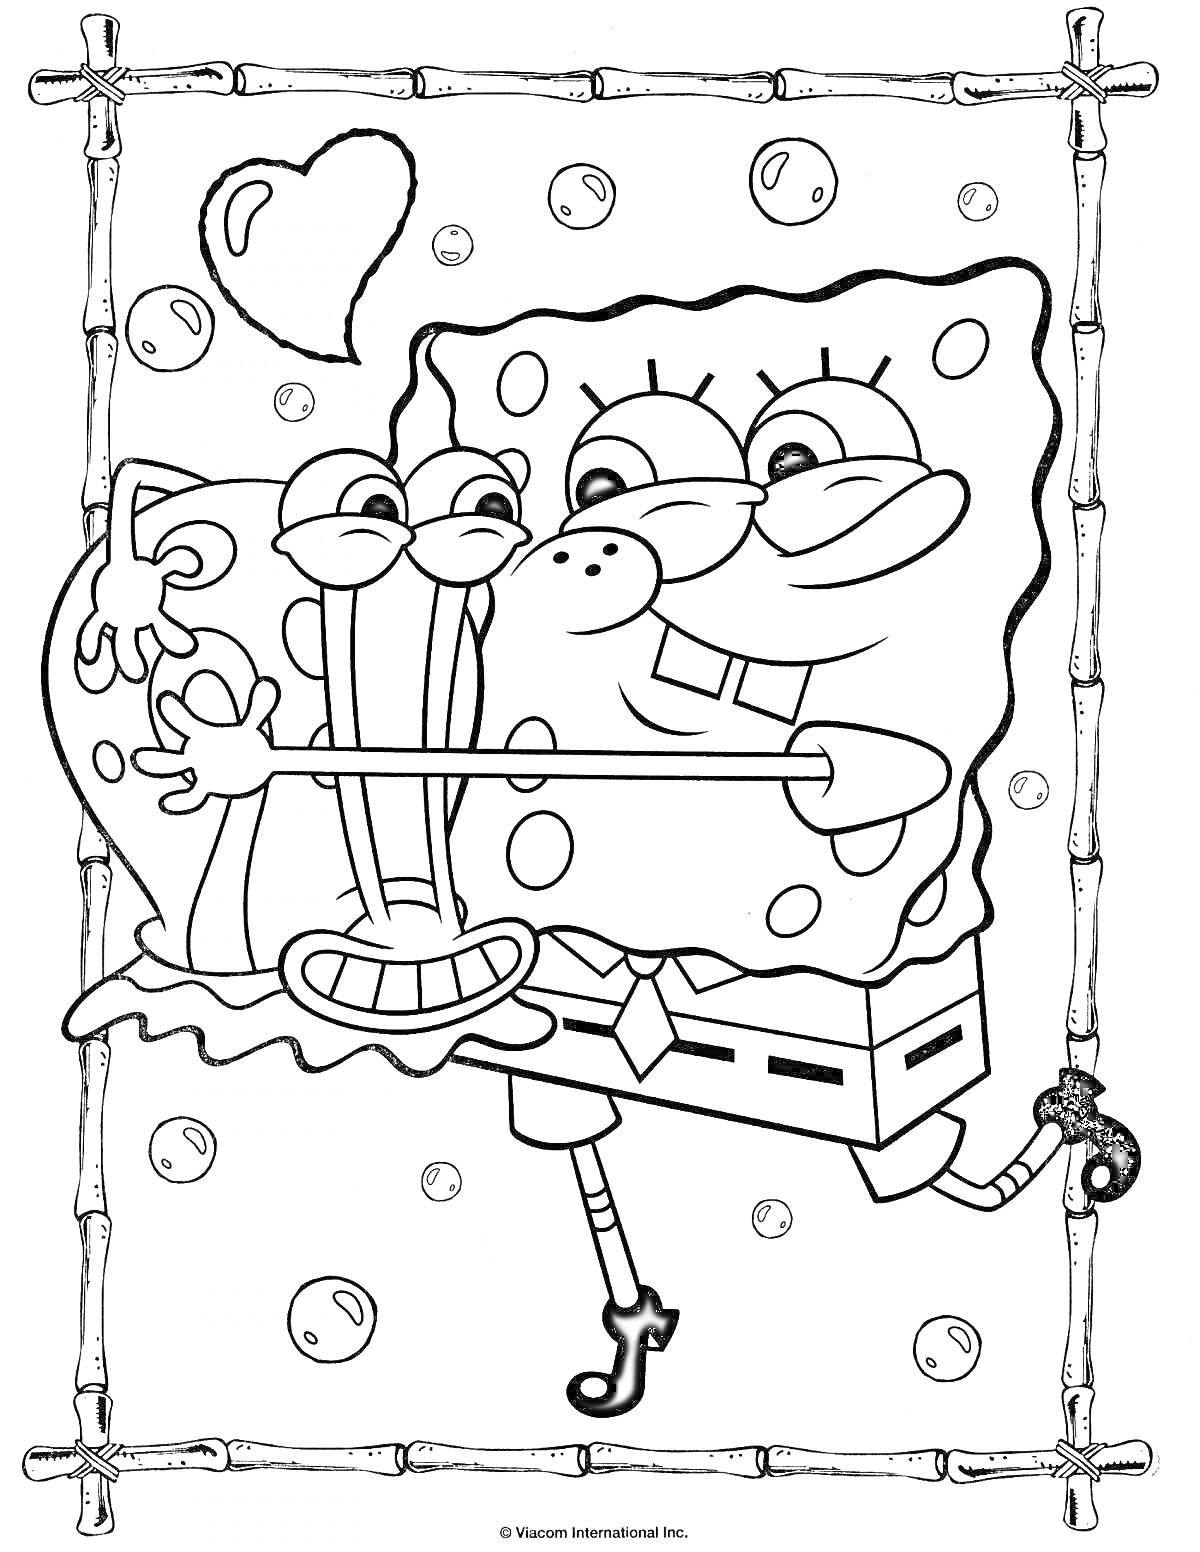 Раскраска Губка Боб и Гэри с сердечком в рамке из палочек и пузырьков